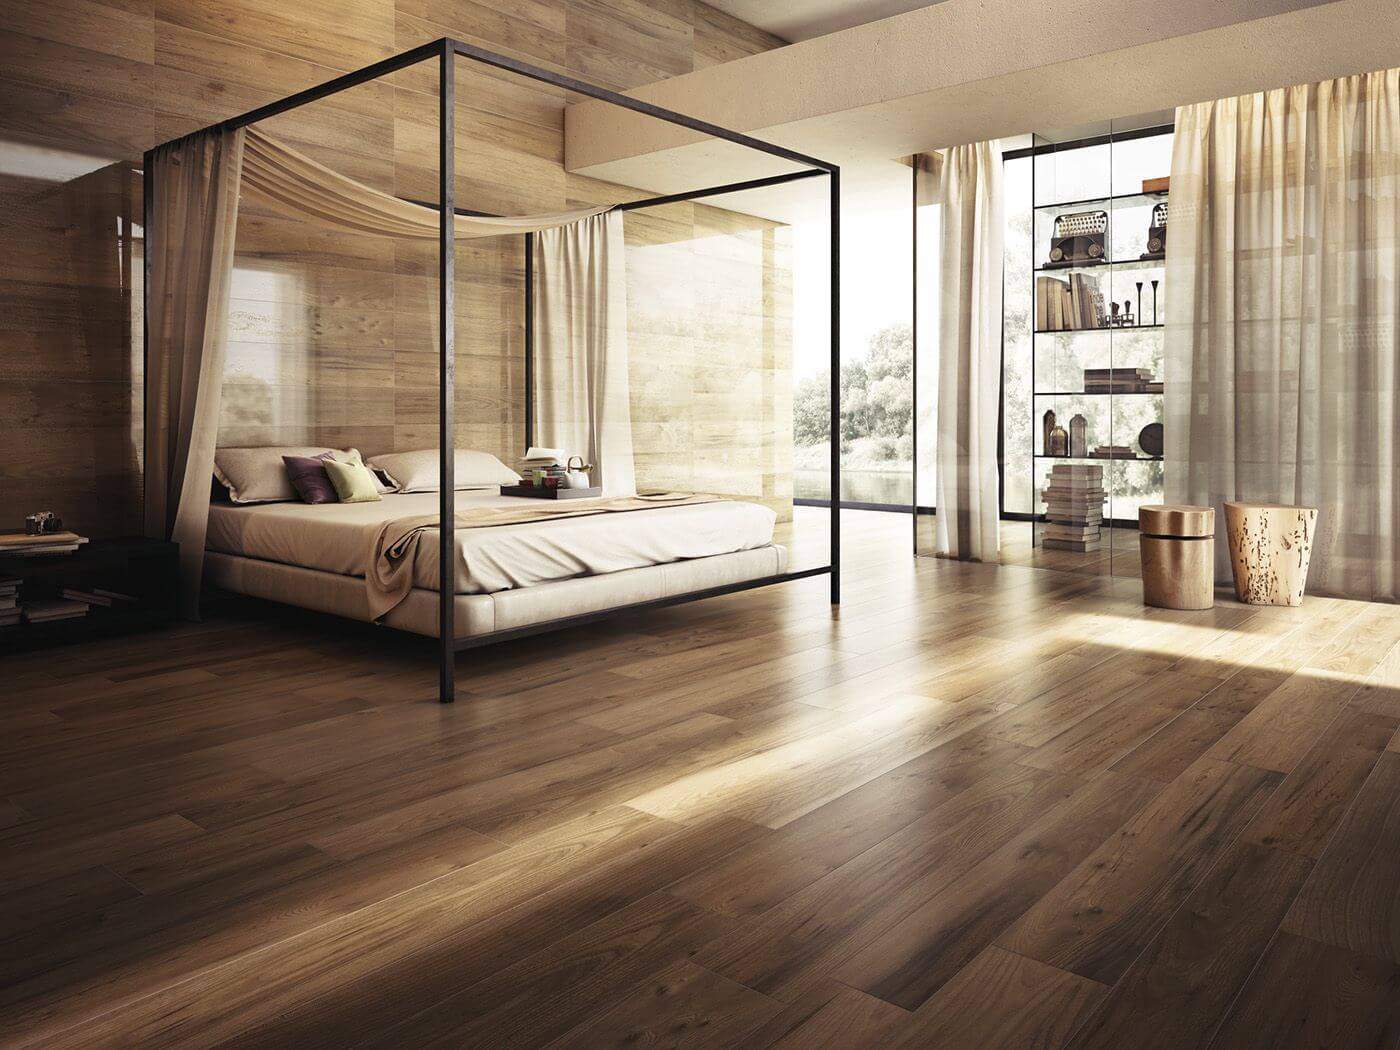 wooden flooring tiles design for brdroom